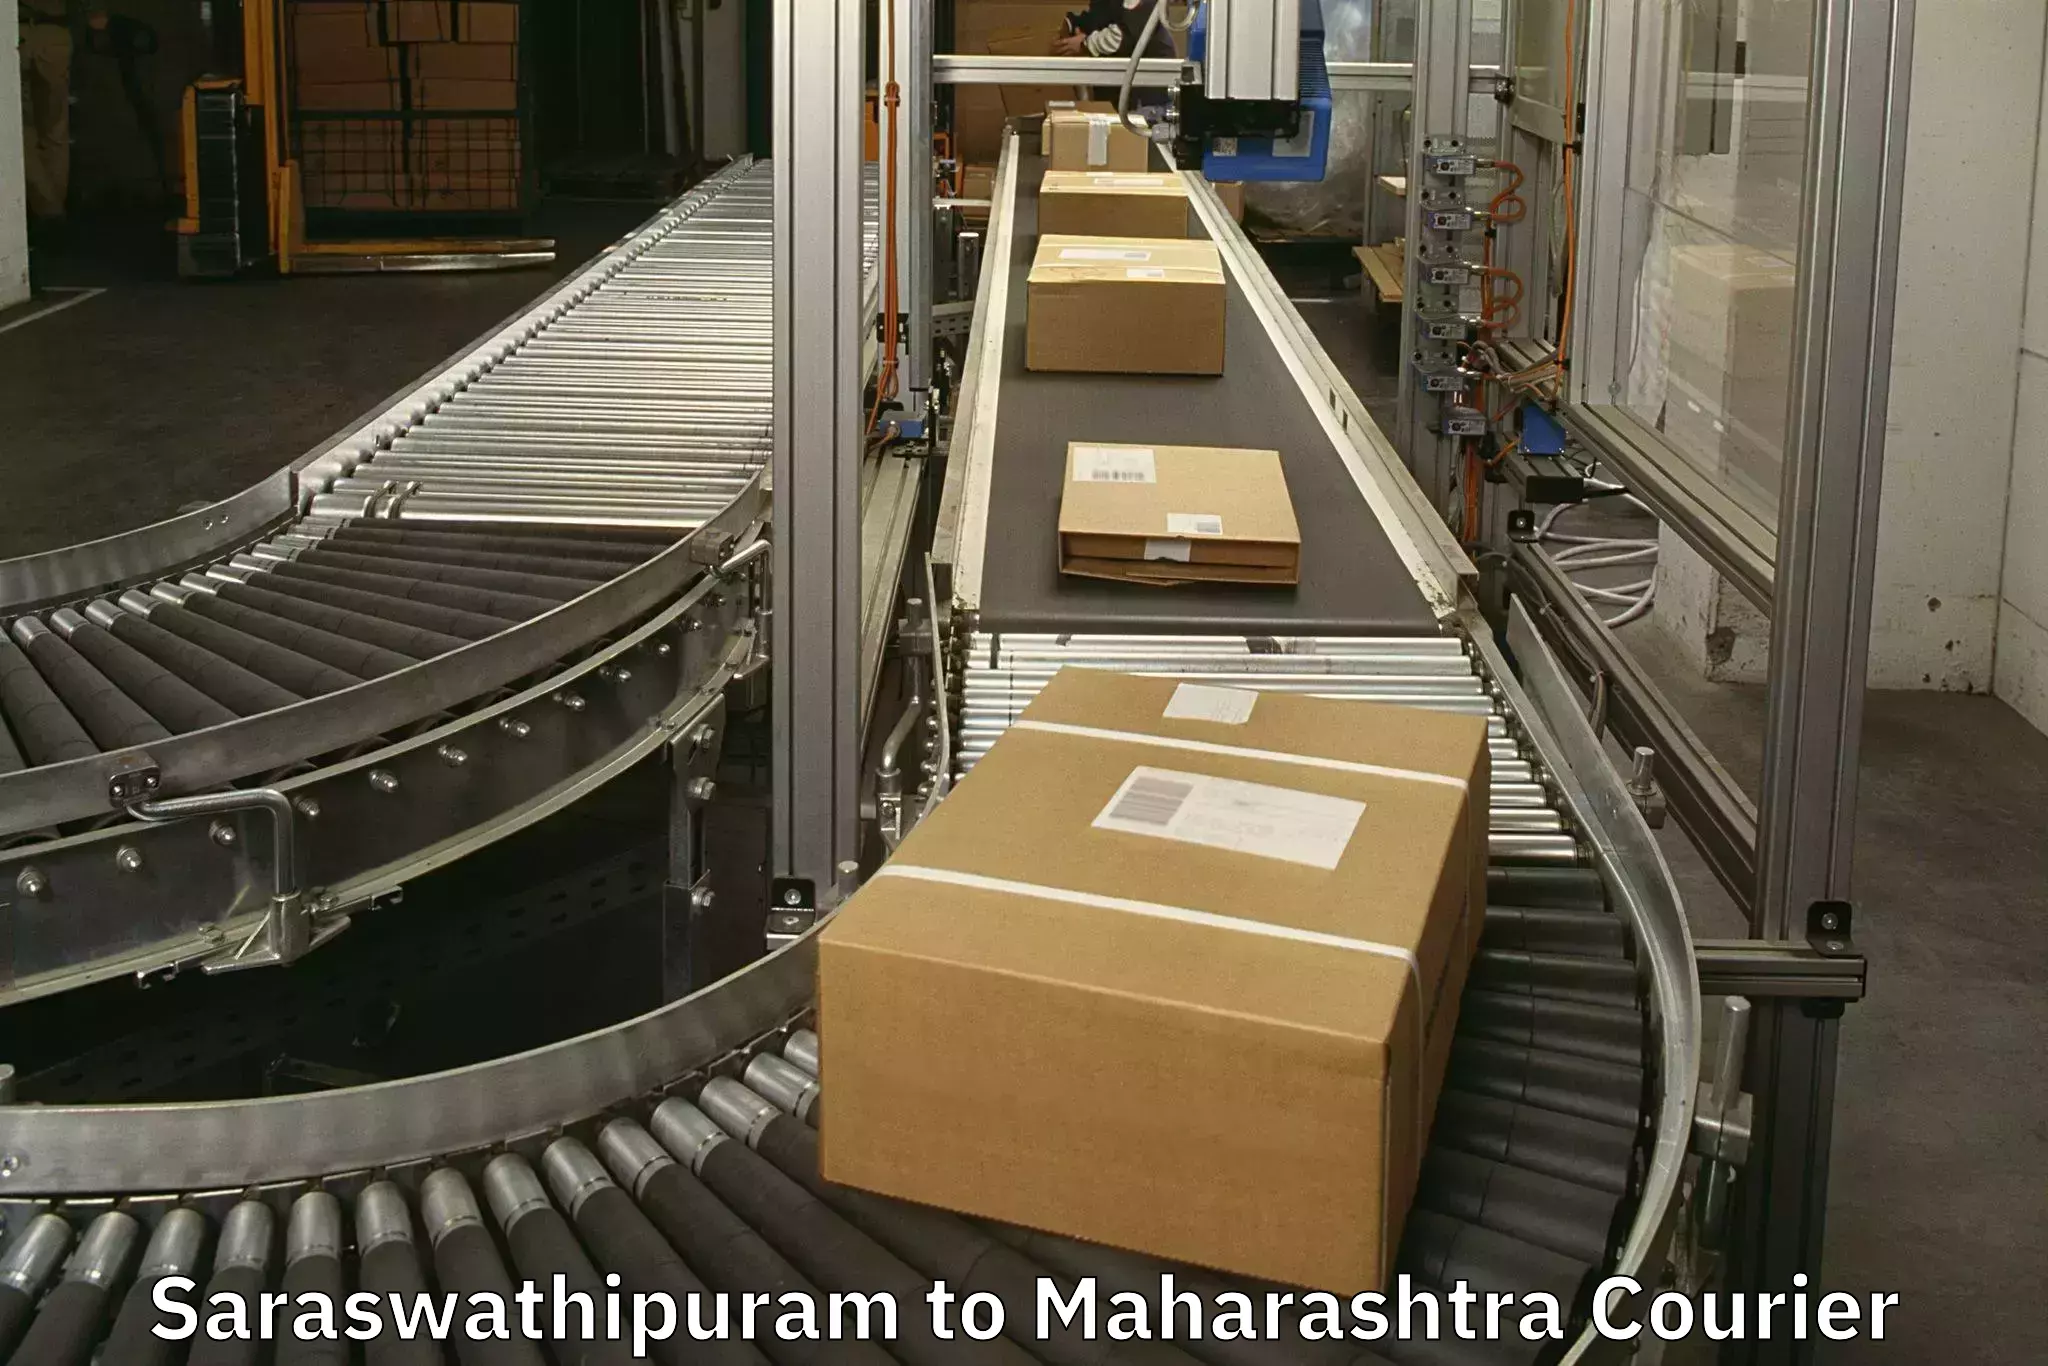 Baggage delivery optimization Saraswathipuram to Baramati